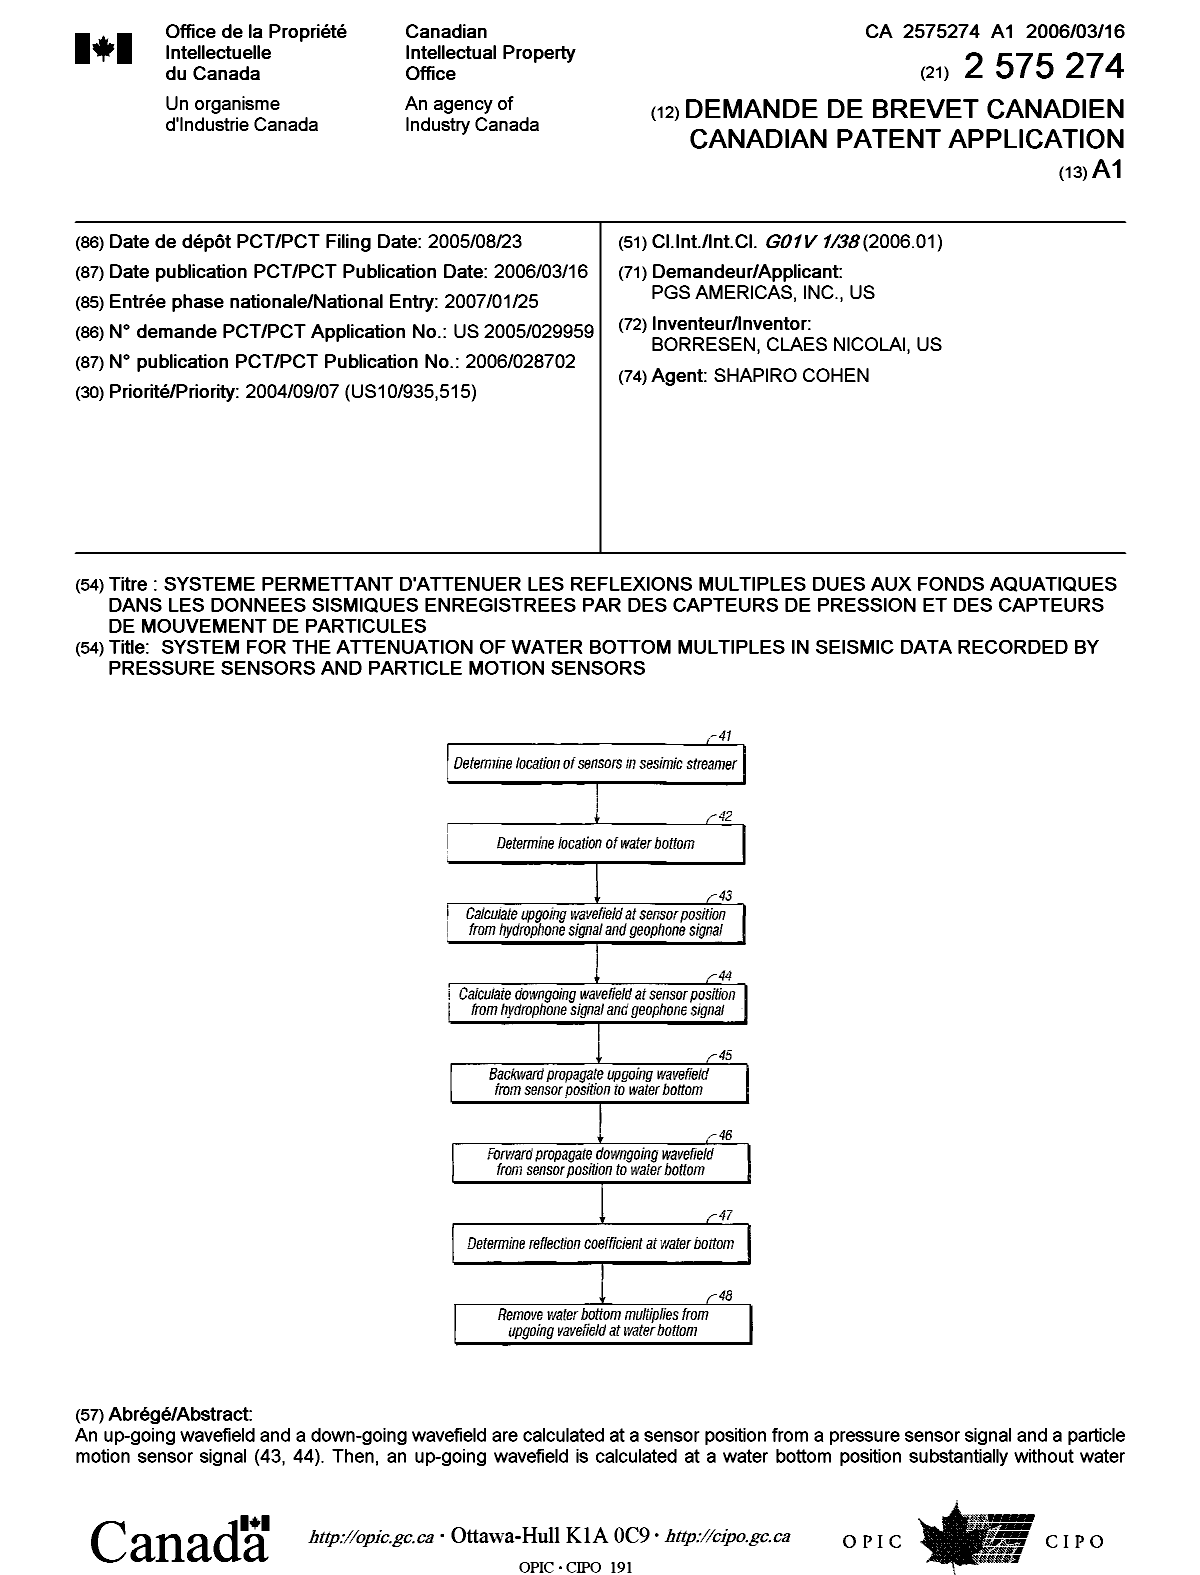 Document de brevet canadien 2575274. Page couverture 20070330. Image 1 de 2